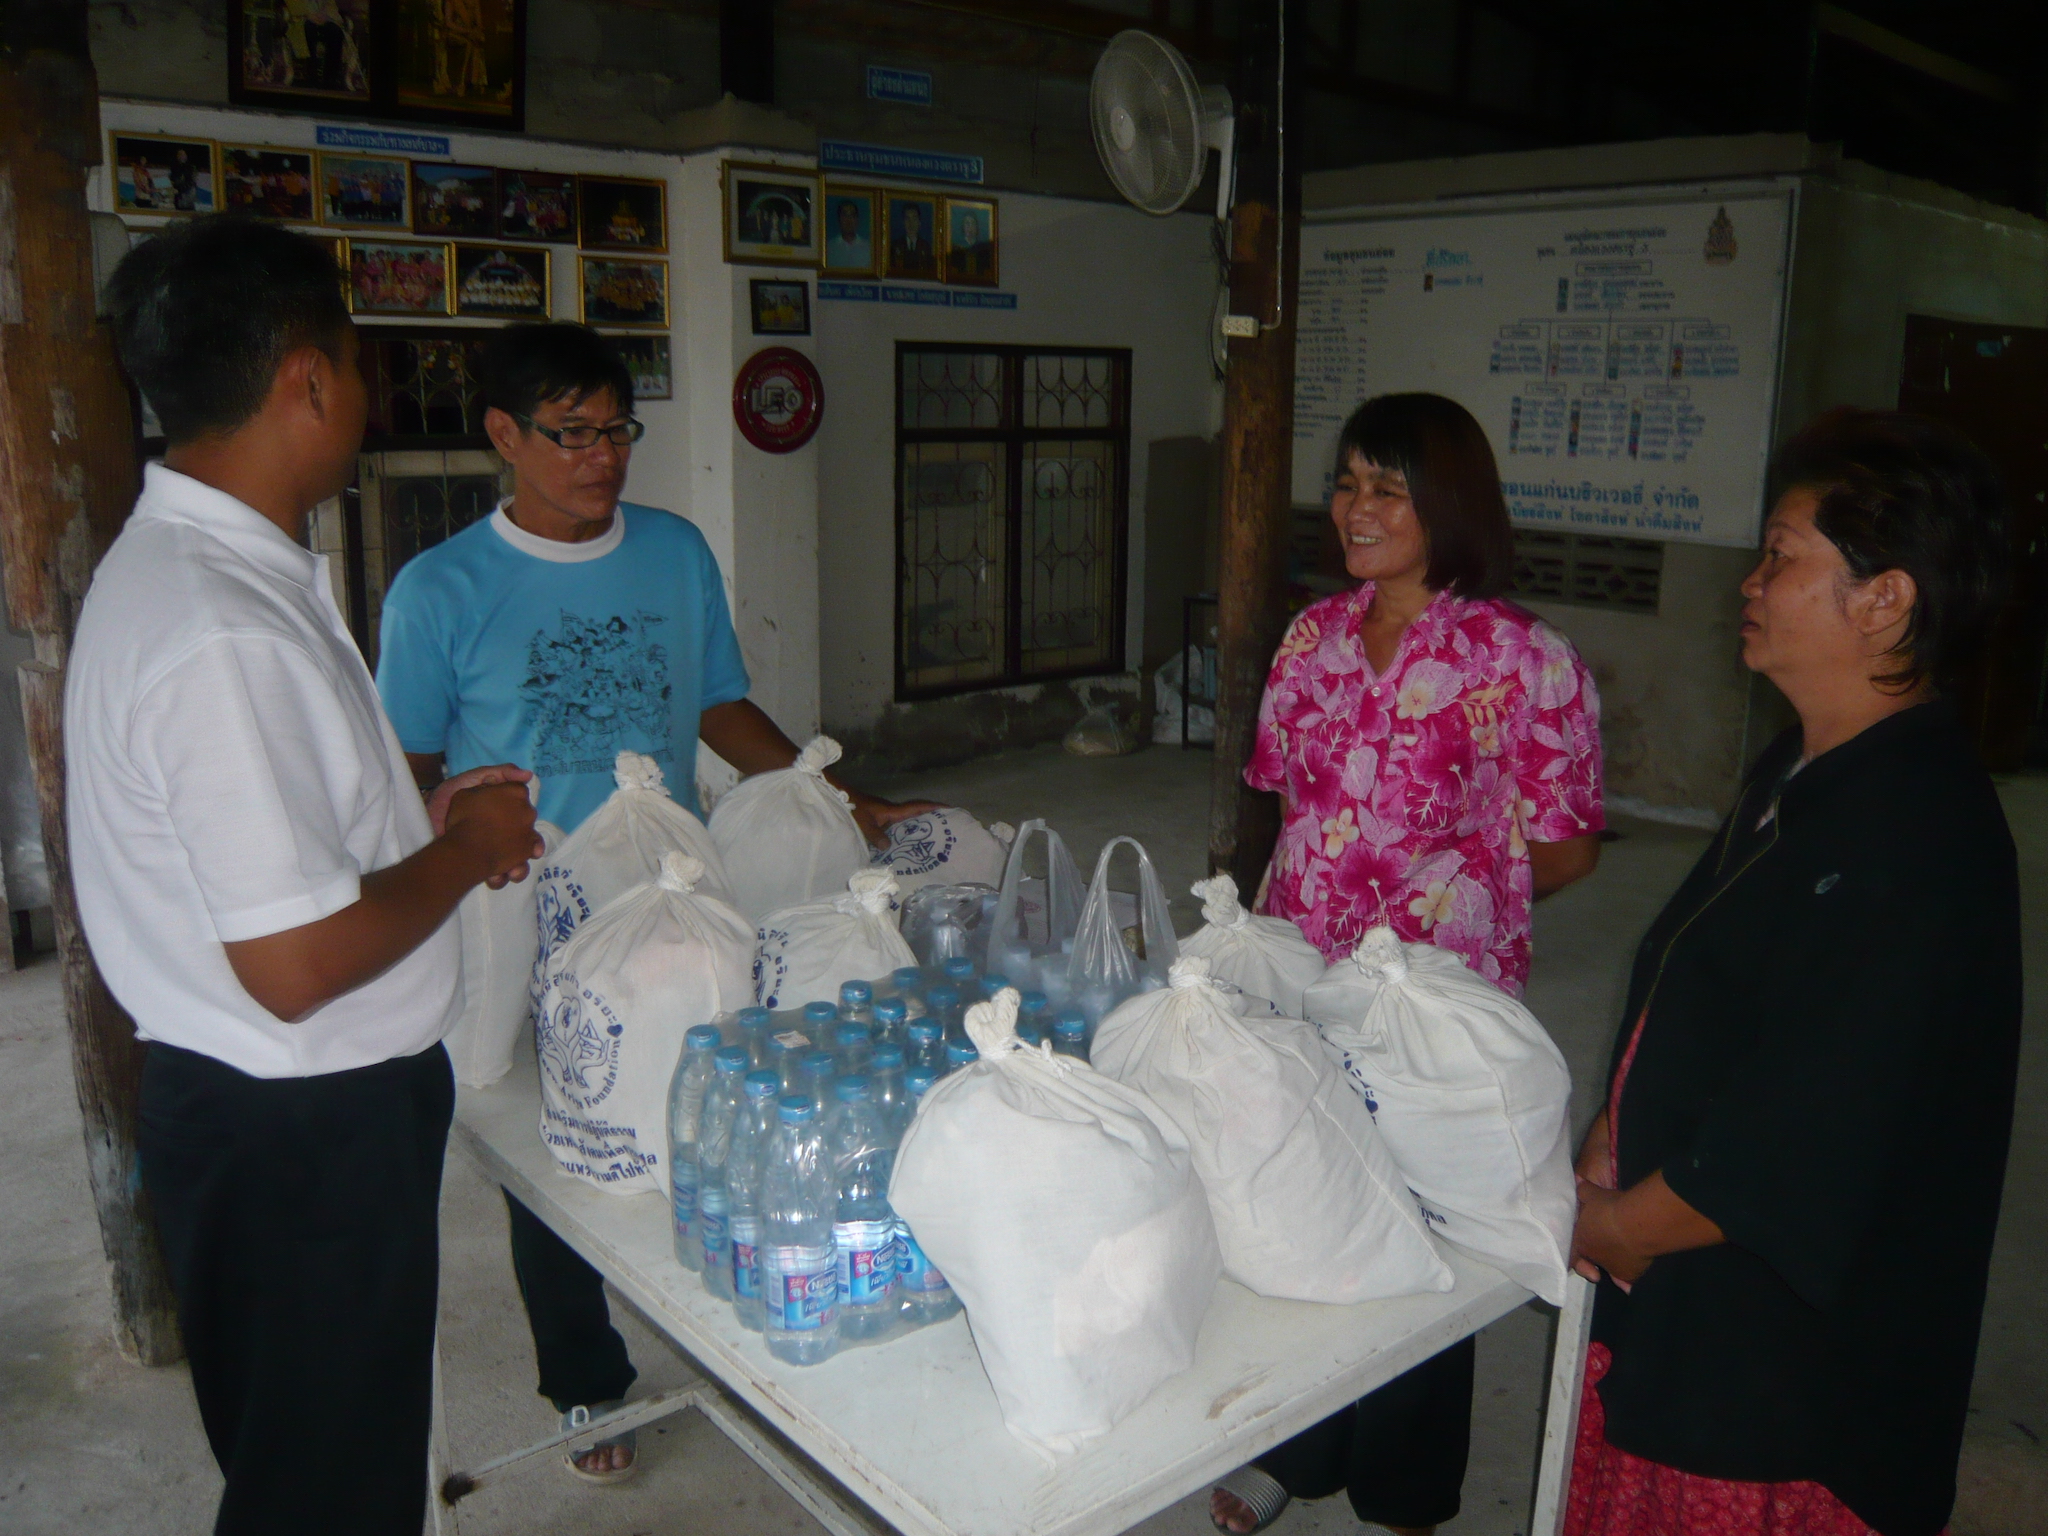 โครงการช่วยผู้ประสบภัยน้ำท่วมจังหวัดขอนแก่นครั้งที่ 3    วันที่ 21 ตุลาคม 2554 ณ   ชุมชนหนองแวงตราชู 3  ตำบลในเมือง   อำเภอเมืองขอนแก่น   จังหวัดขอนแก่น